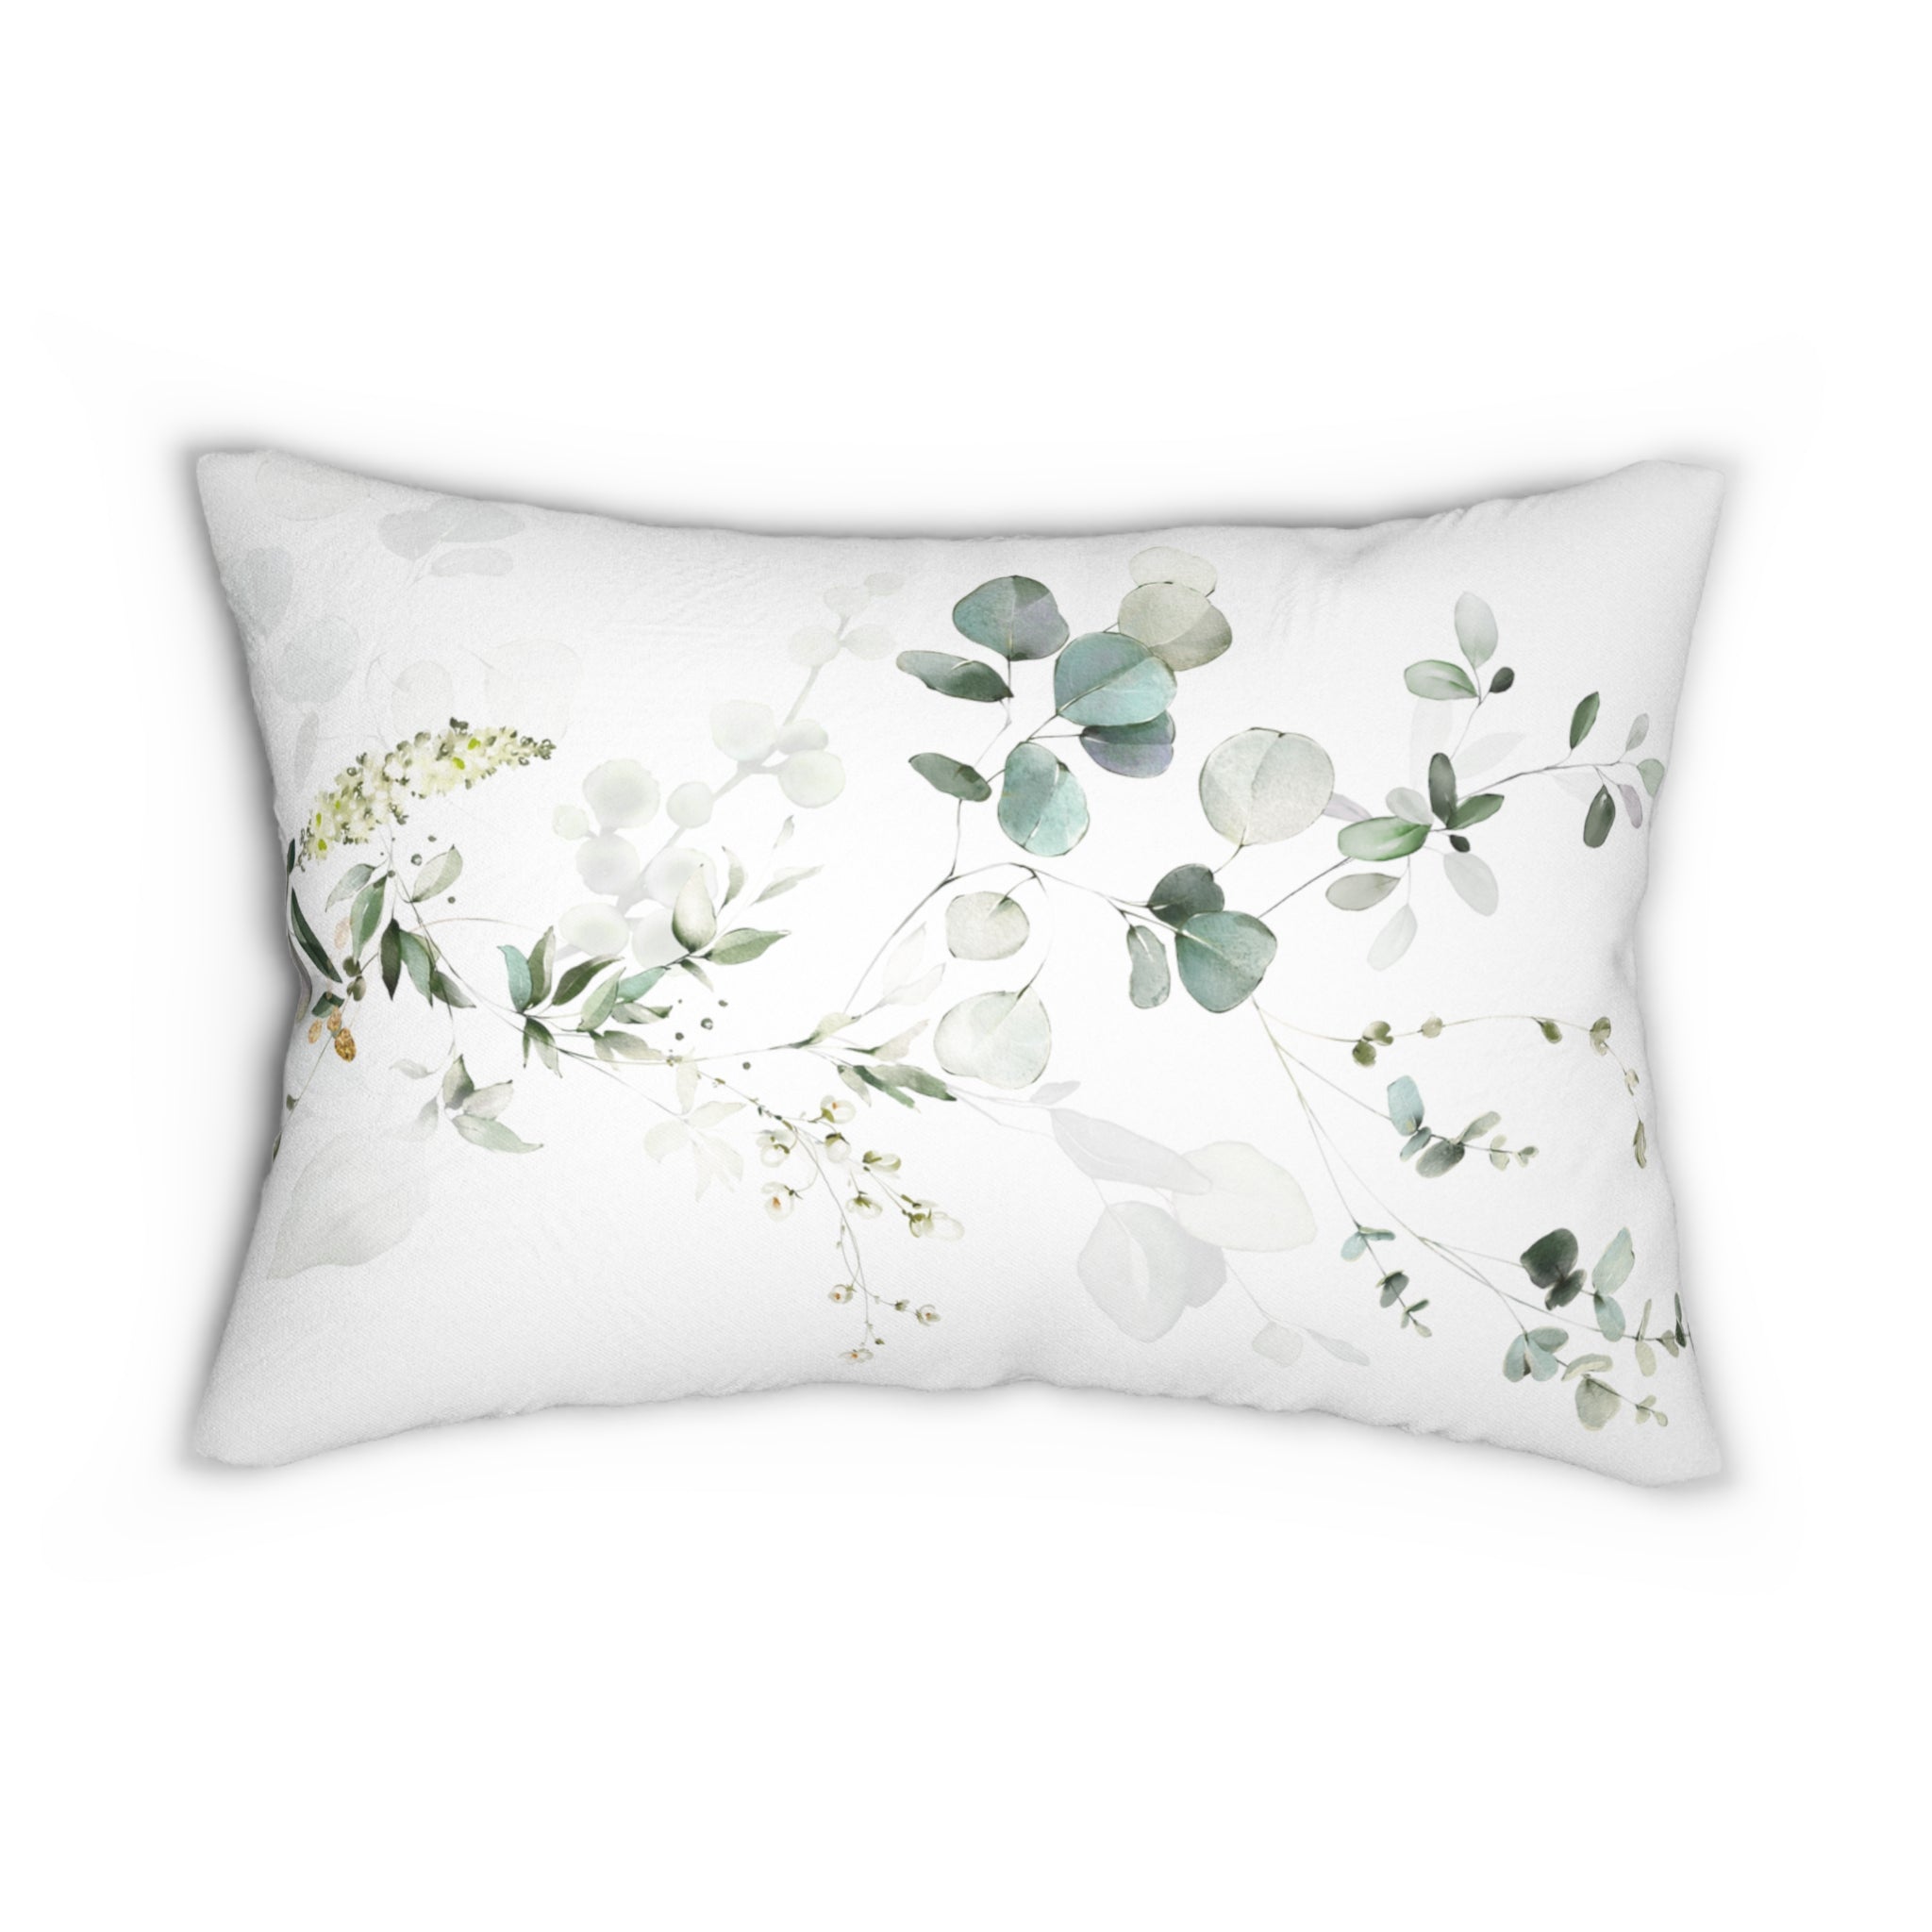 Floral Lumbar Pillow | White Sage Green, Eucalyptus Leaves